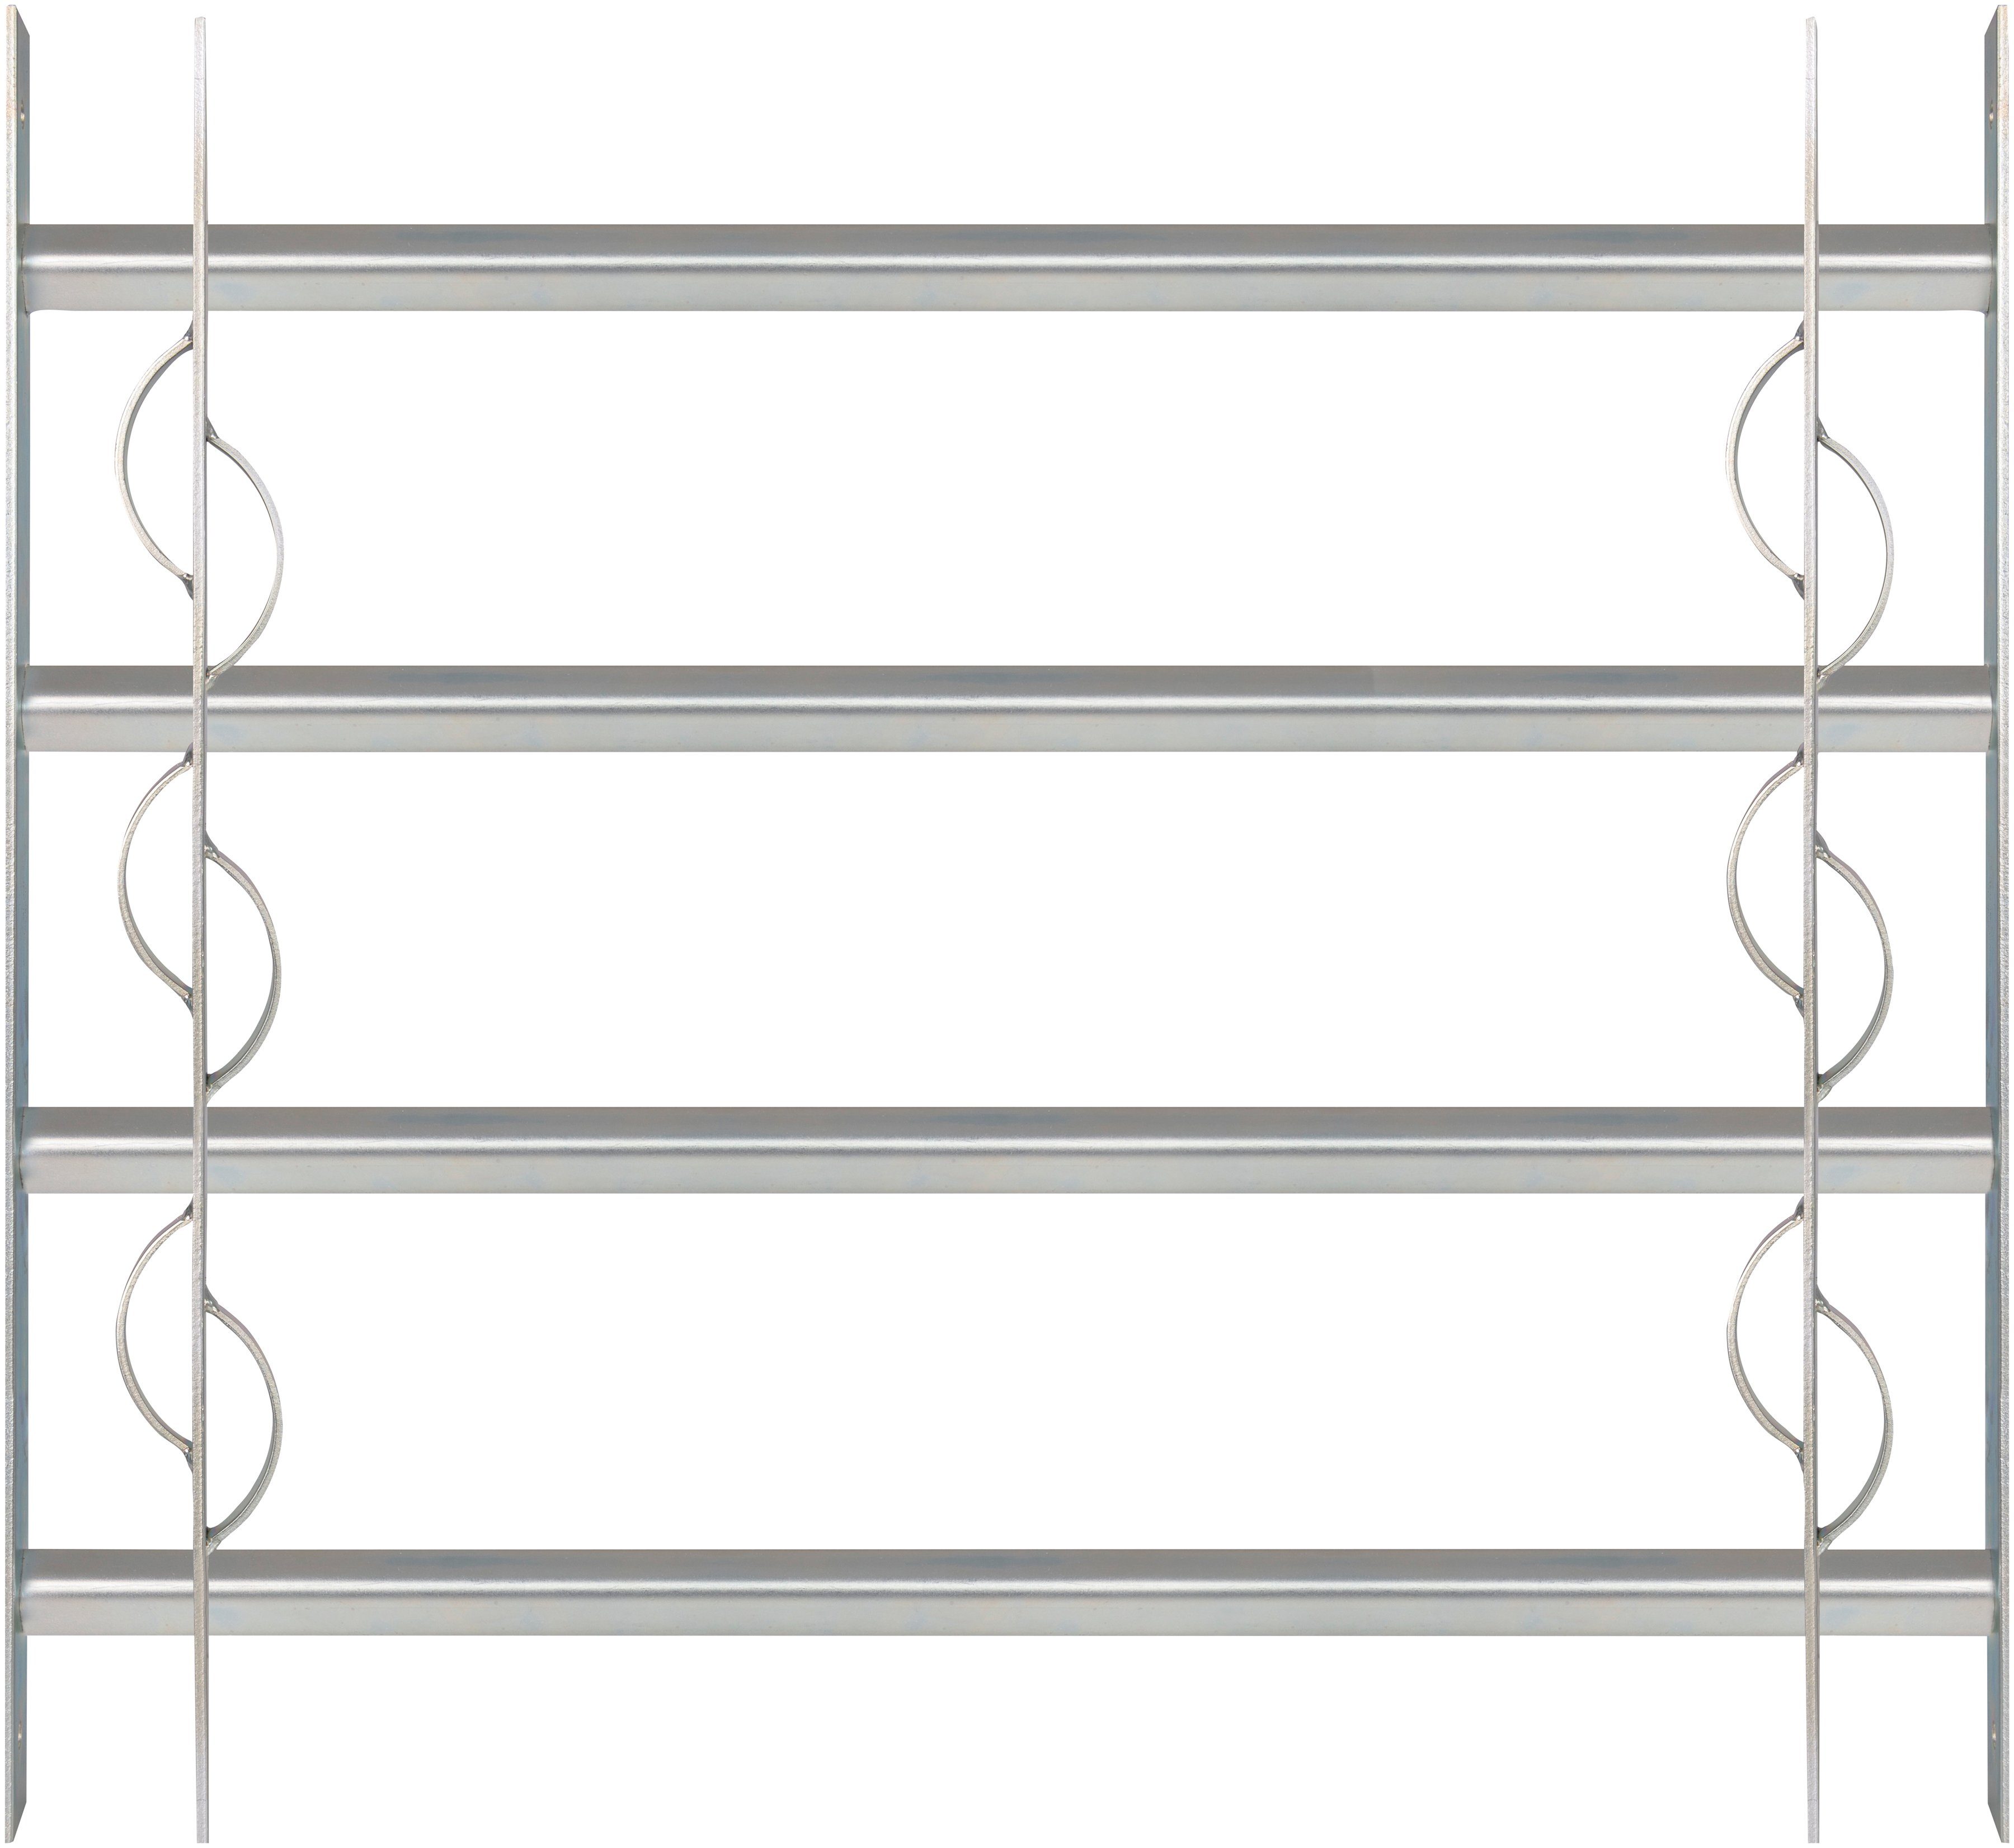 Alberts Fensterschutzgitter Secorino Style, BxH: 70-105x60 cm | Fenstersicherungen